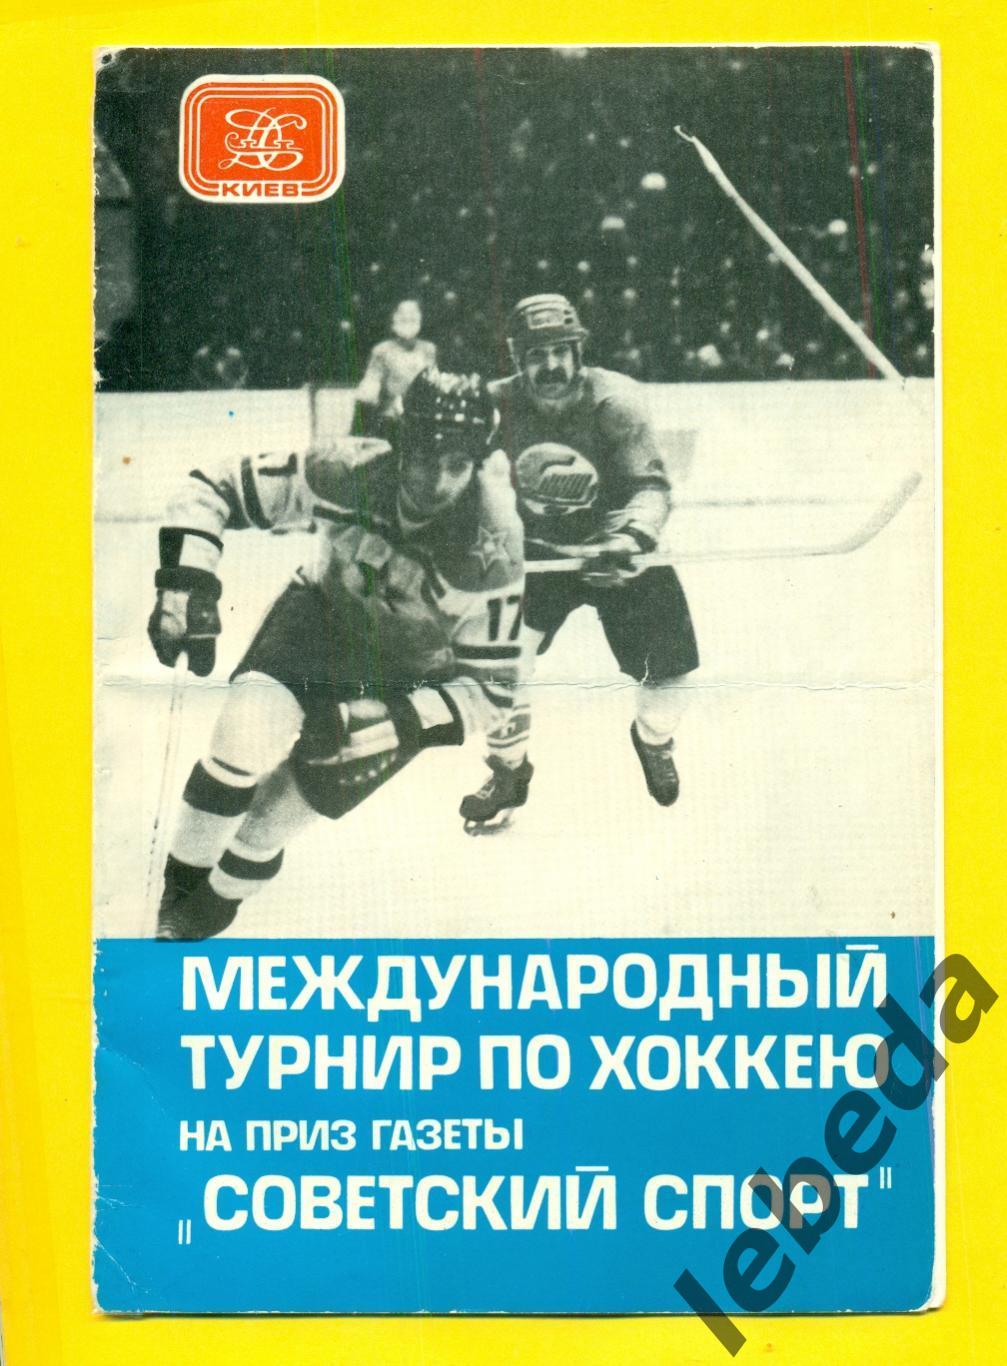 Киев-1979 г. ТурнирСоветский Спорт ( Сокол,Салават Юлаев,Польша,Чехословакия)